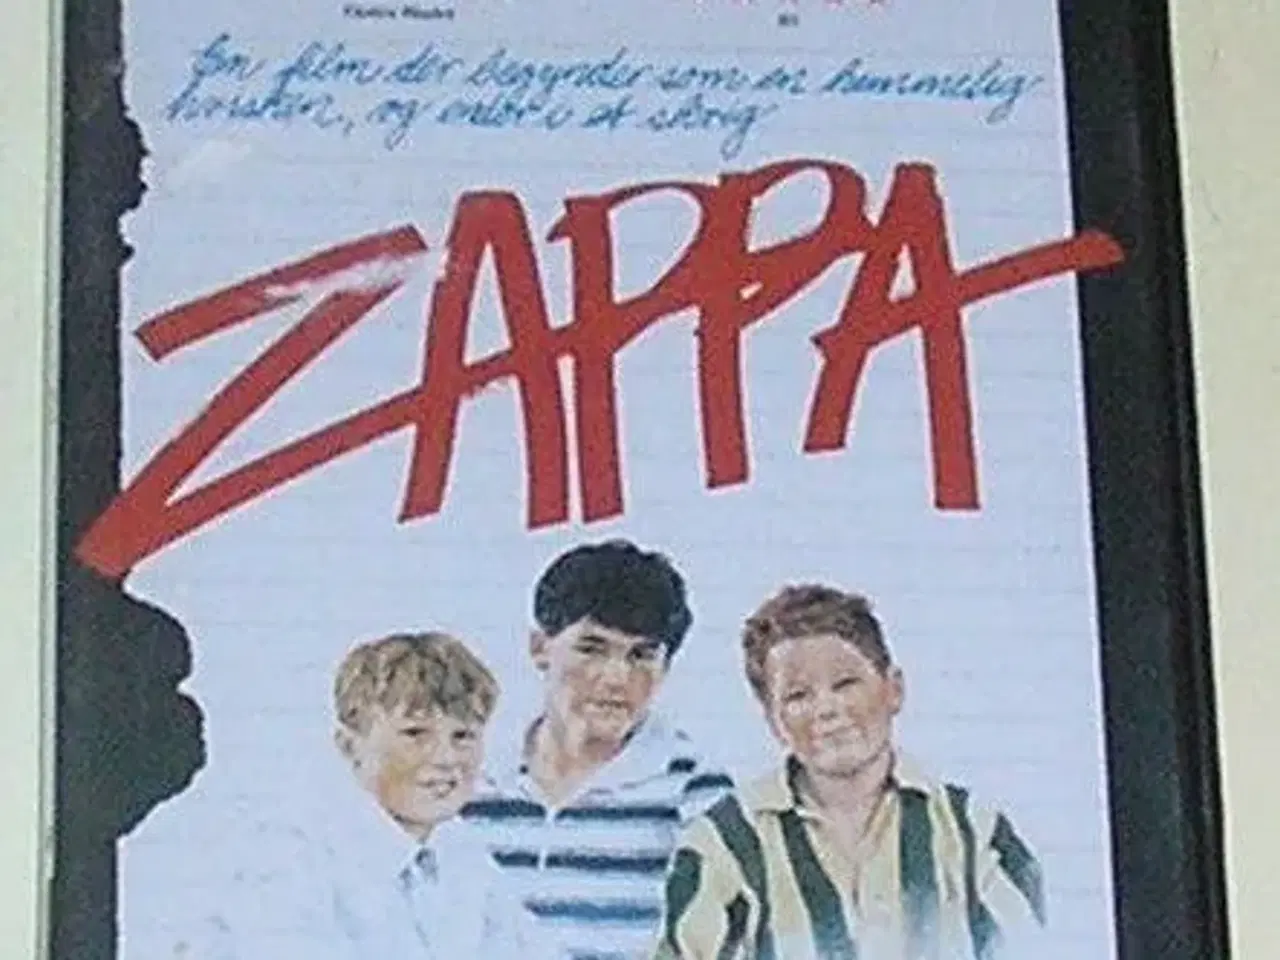 Billede 1 - dvd, Zappa, film af Bille August